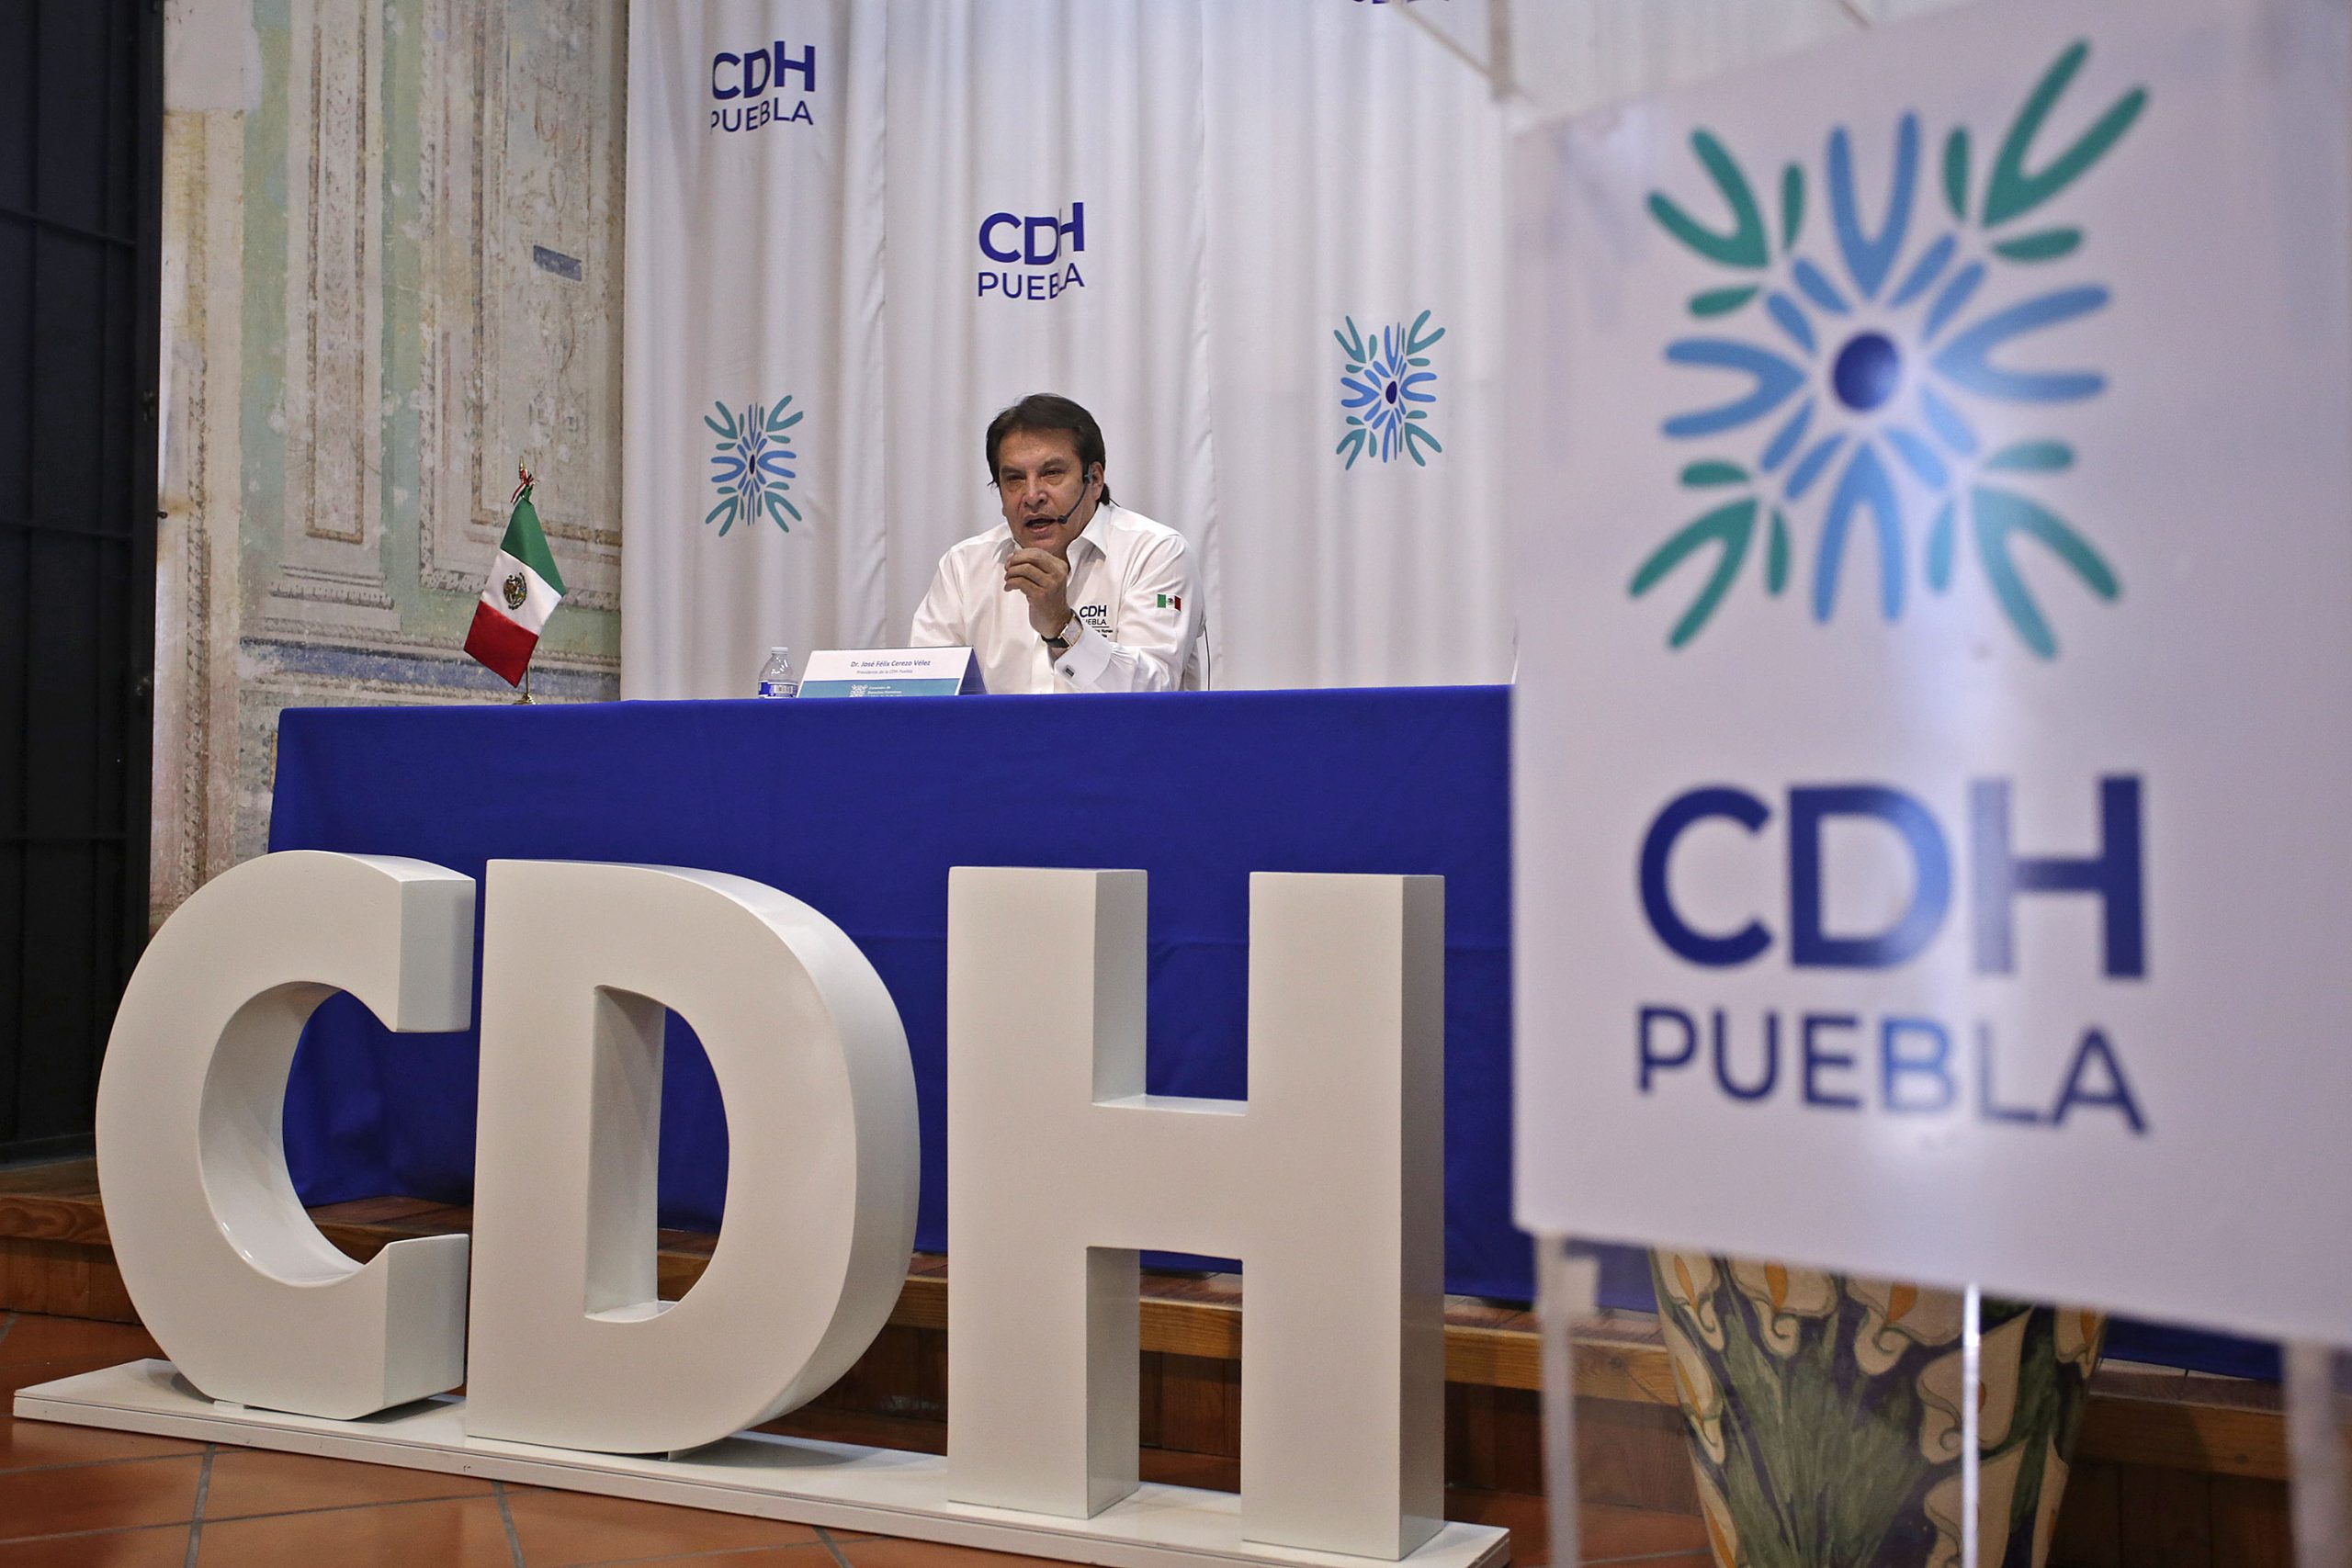 Revisiones aleatorias a transeúntes son ilegales: CDH Puebla